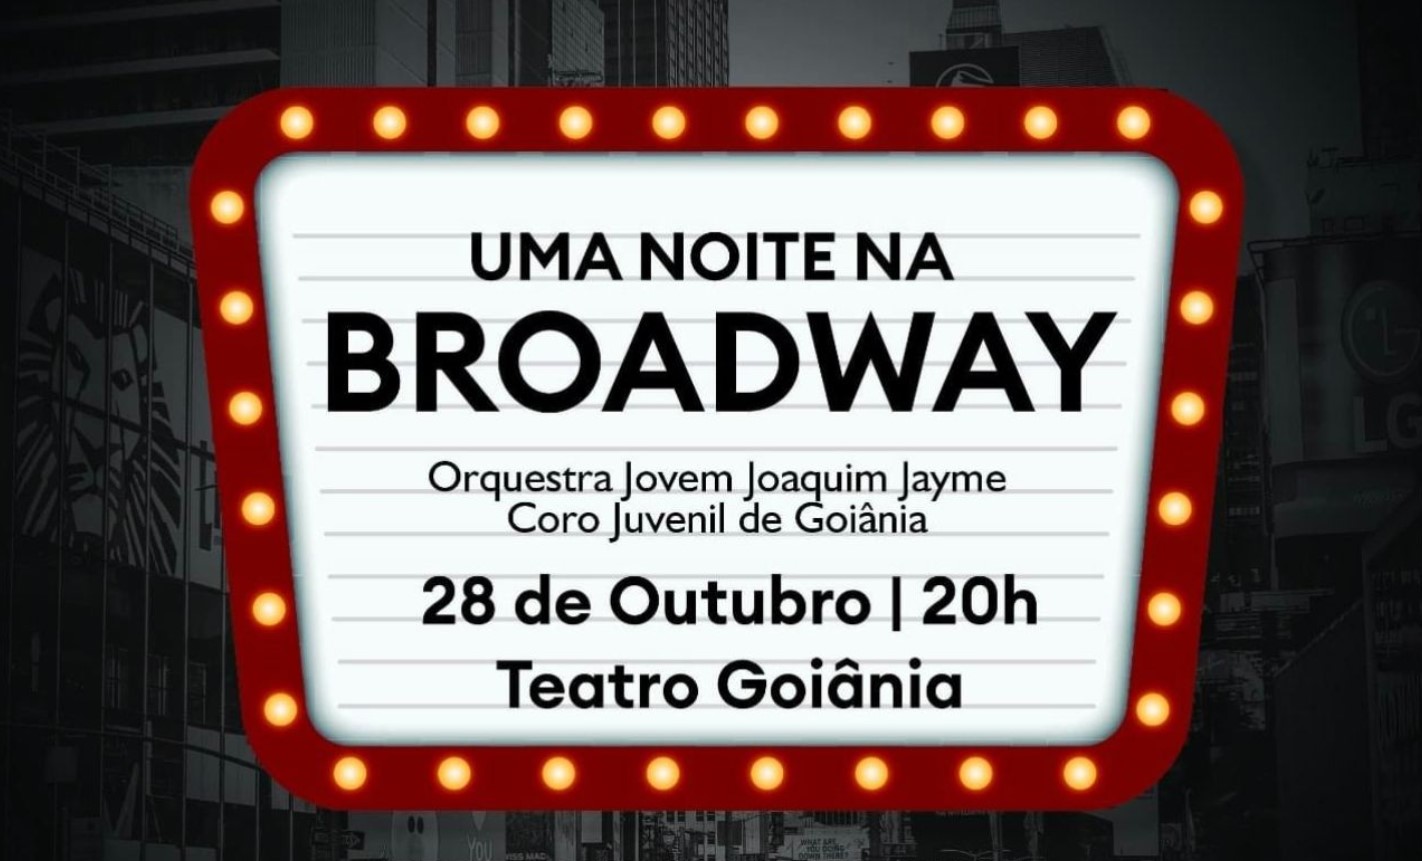 Concerto no Teatro Goiânia: Coro Juvenil de Goiânia apresenta concerto "Uma Noite na Broadway"